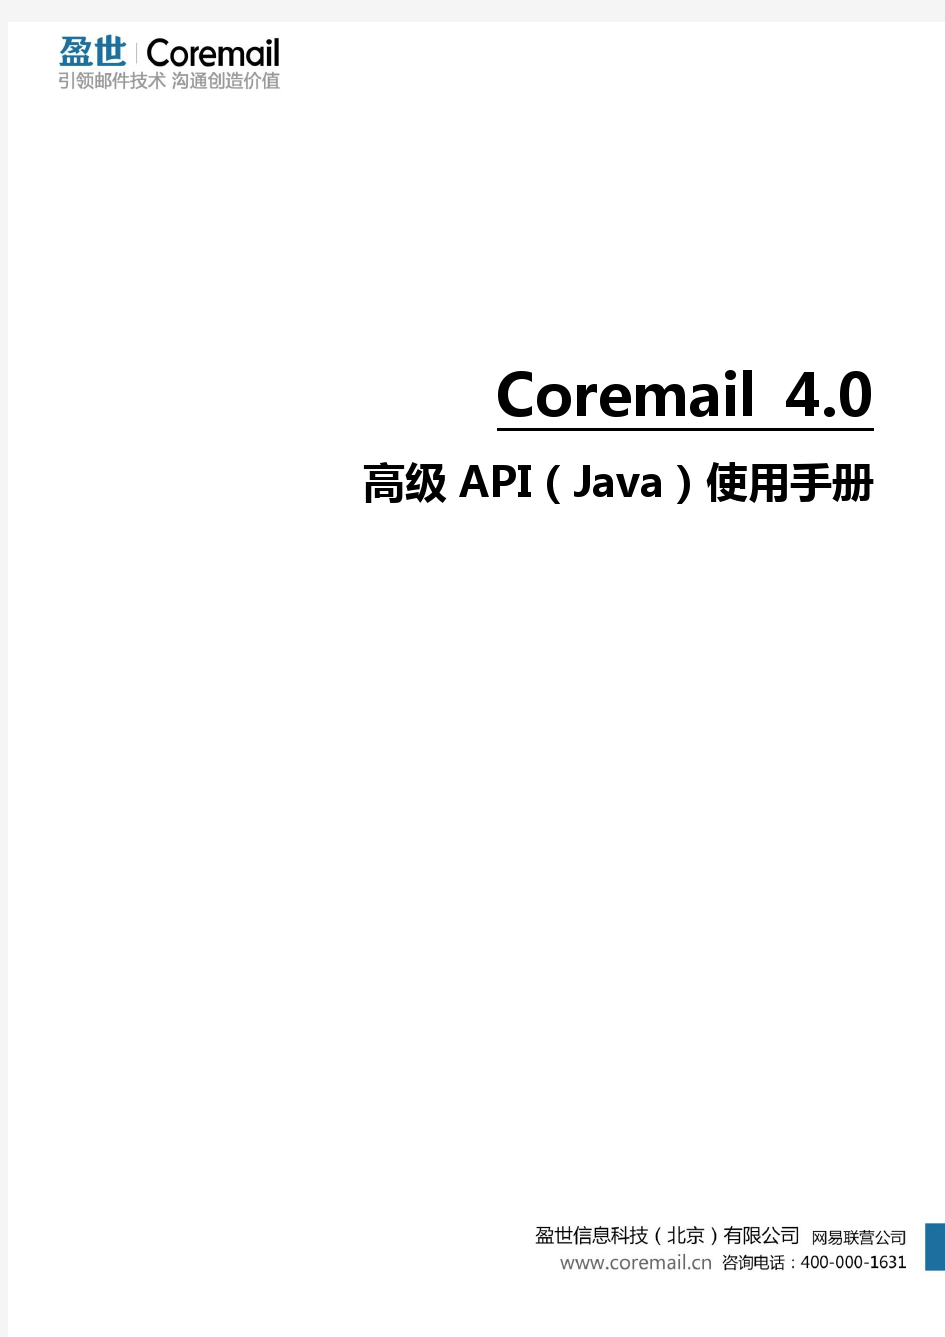 Coremail 4.0 高级API使用手册(Java版)